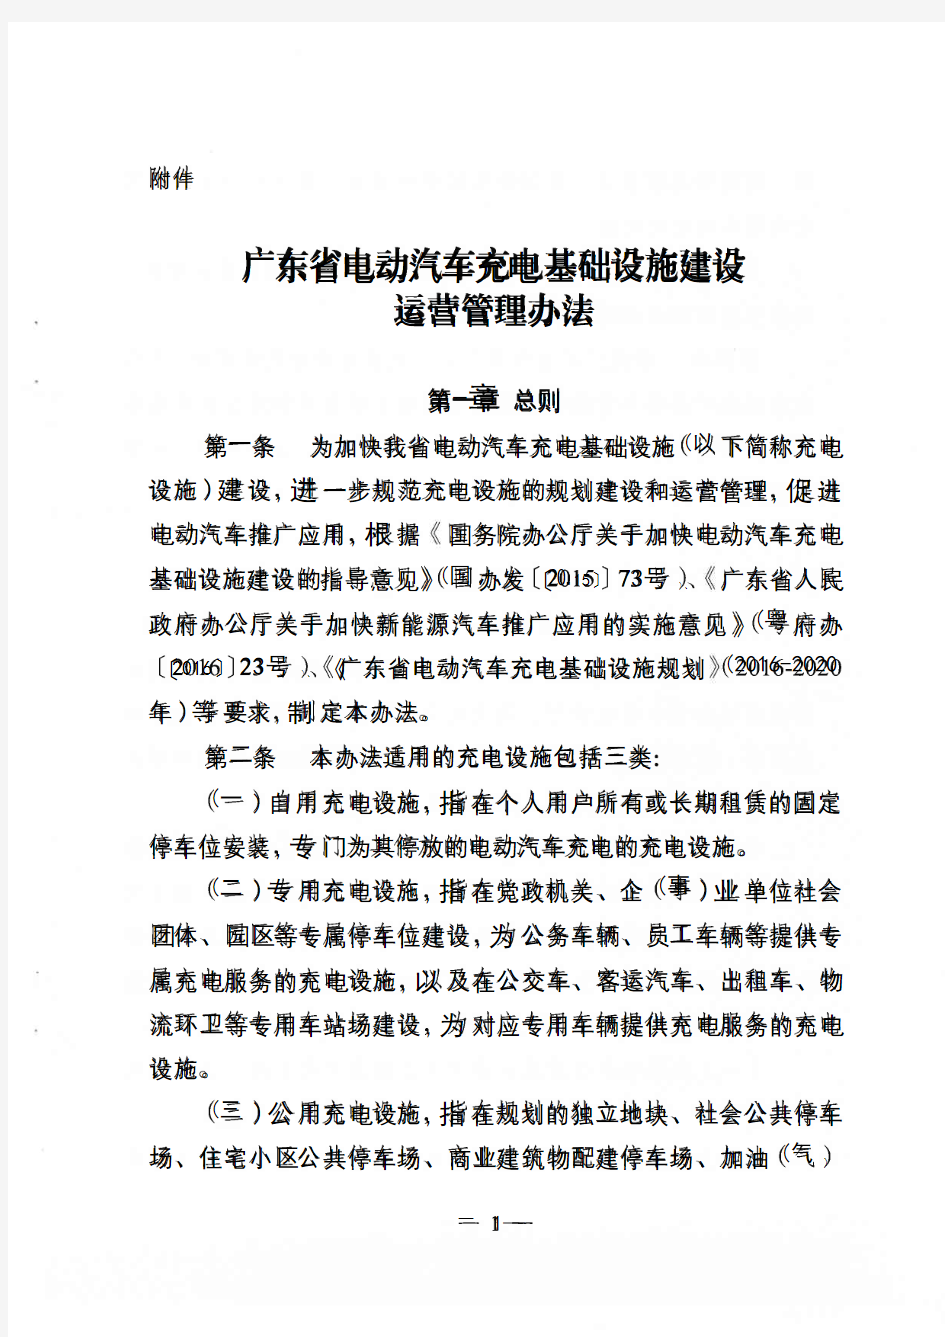 广东省电动汽车充电基础设施建设运营管理办法